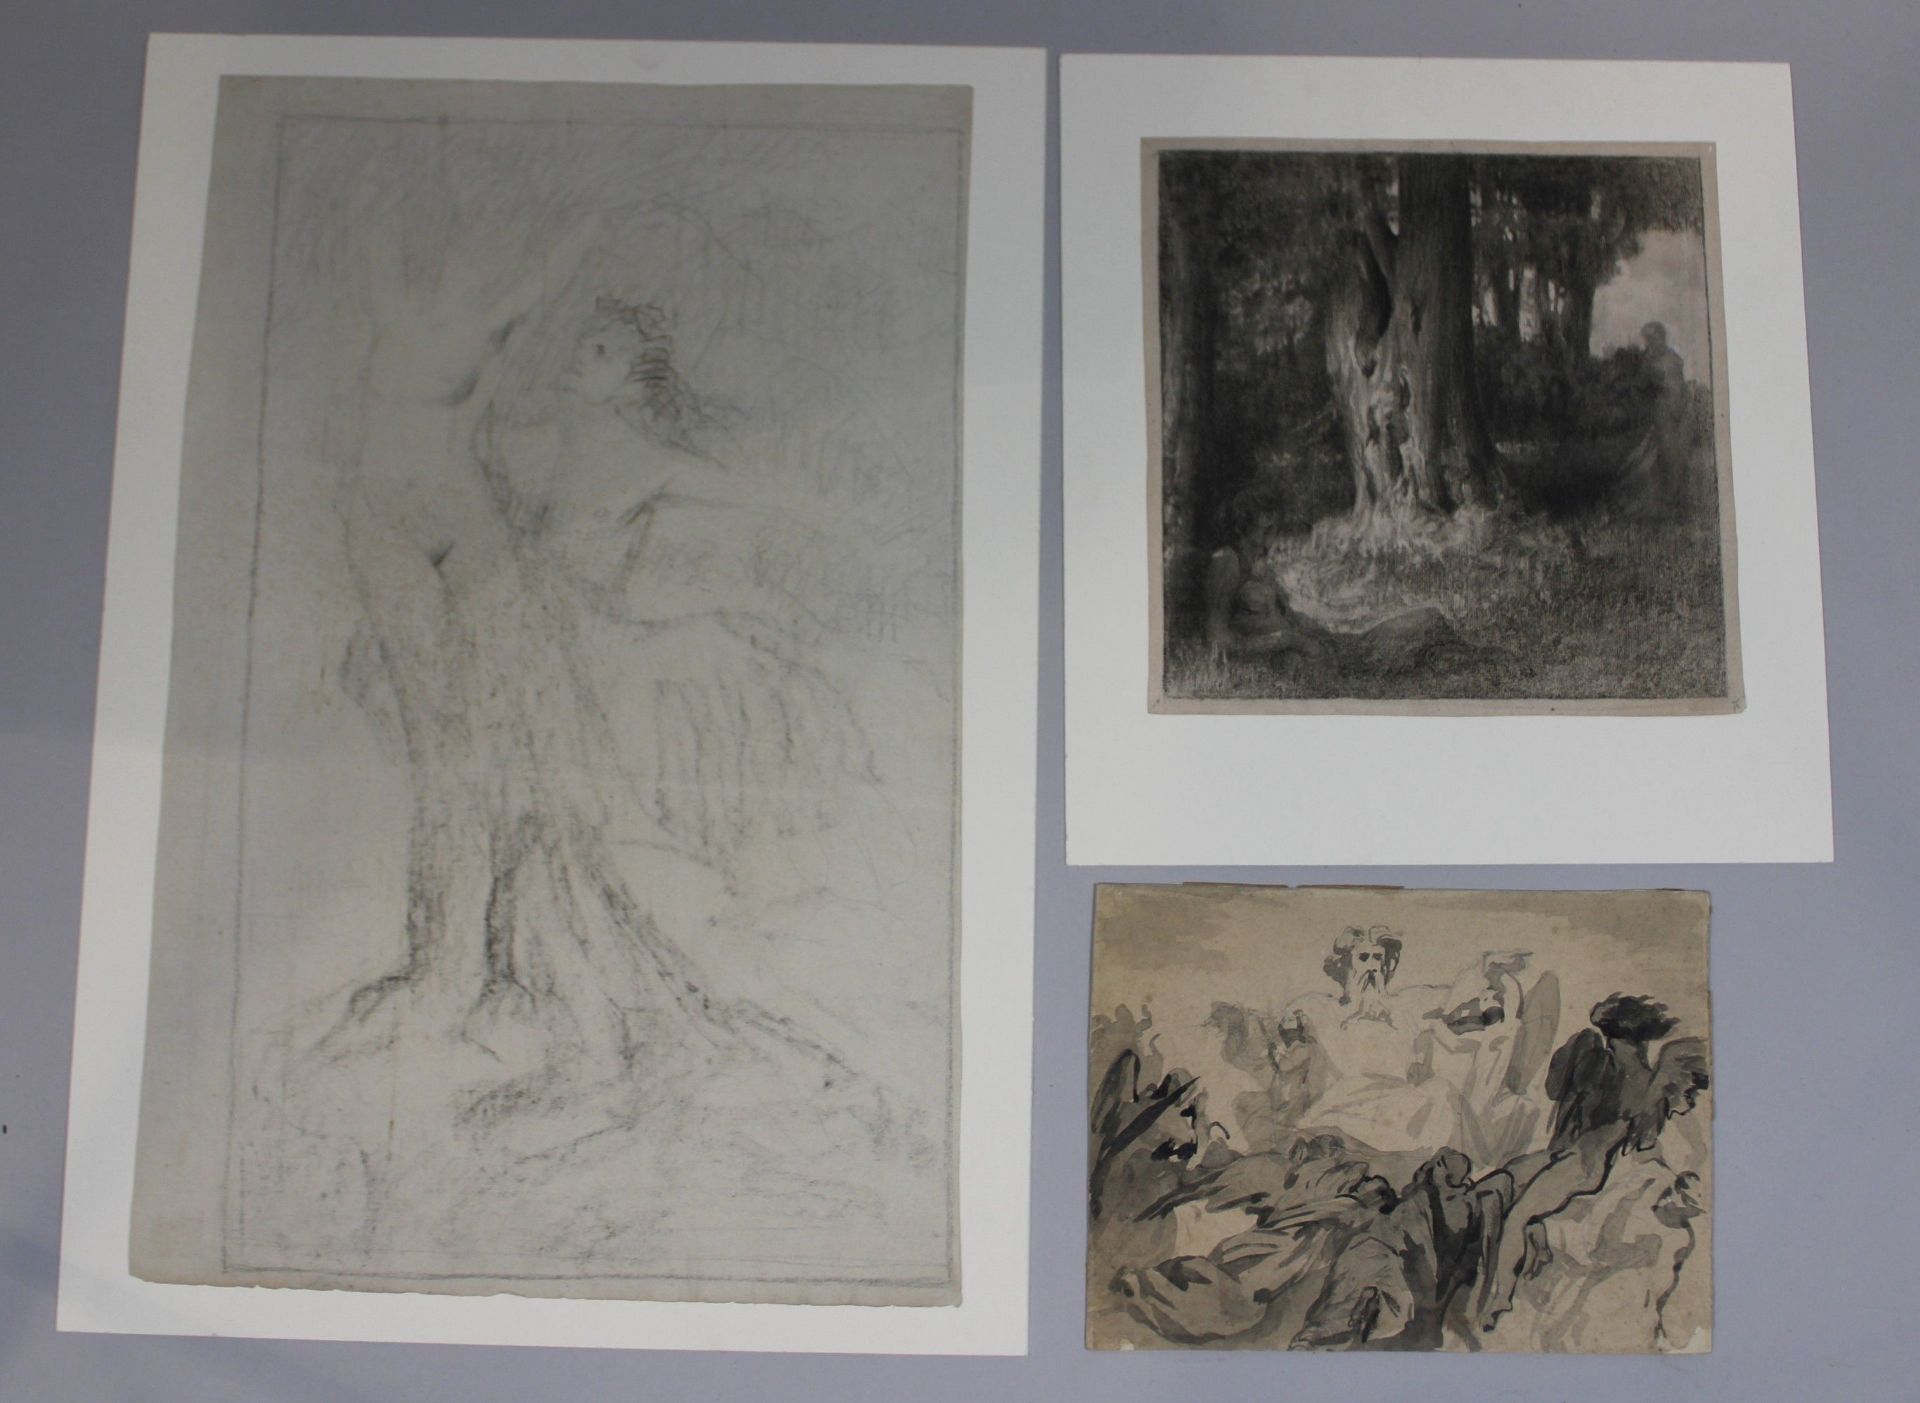 Unbekannter Künstler, Drei Zeichnungen, Mythologische Szenen, Maße: 22 x 30 cm, 30 x 30 cm, 39 x 60